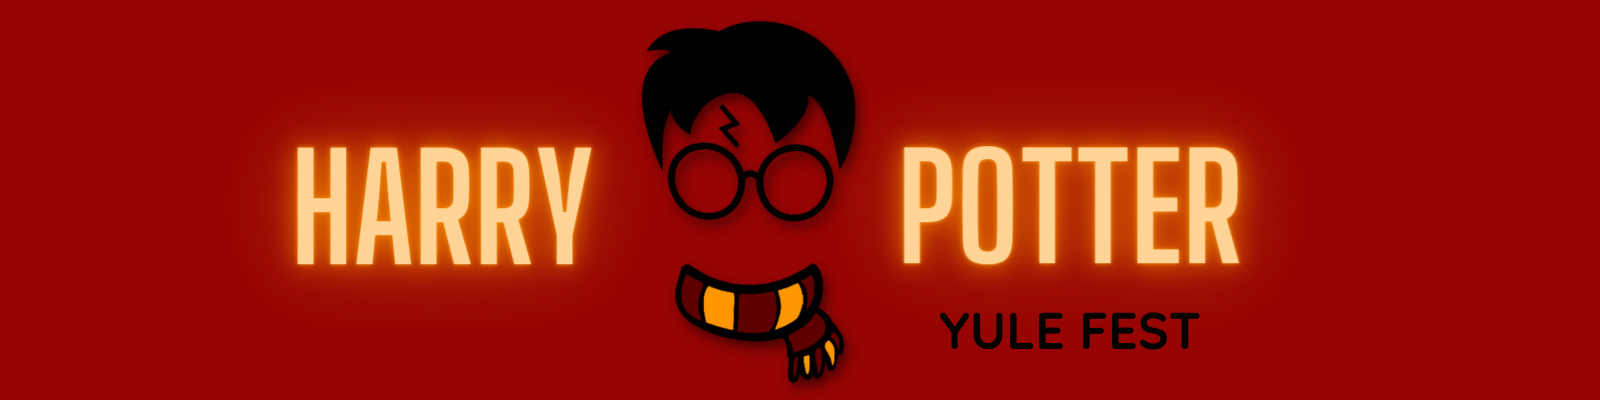 Harry Potter Yule Fest Registration Page Header